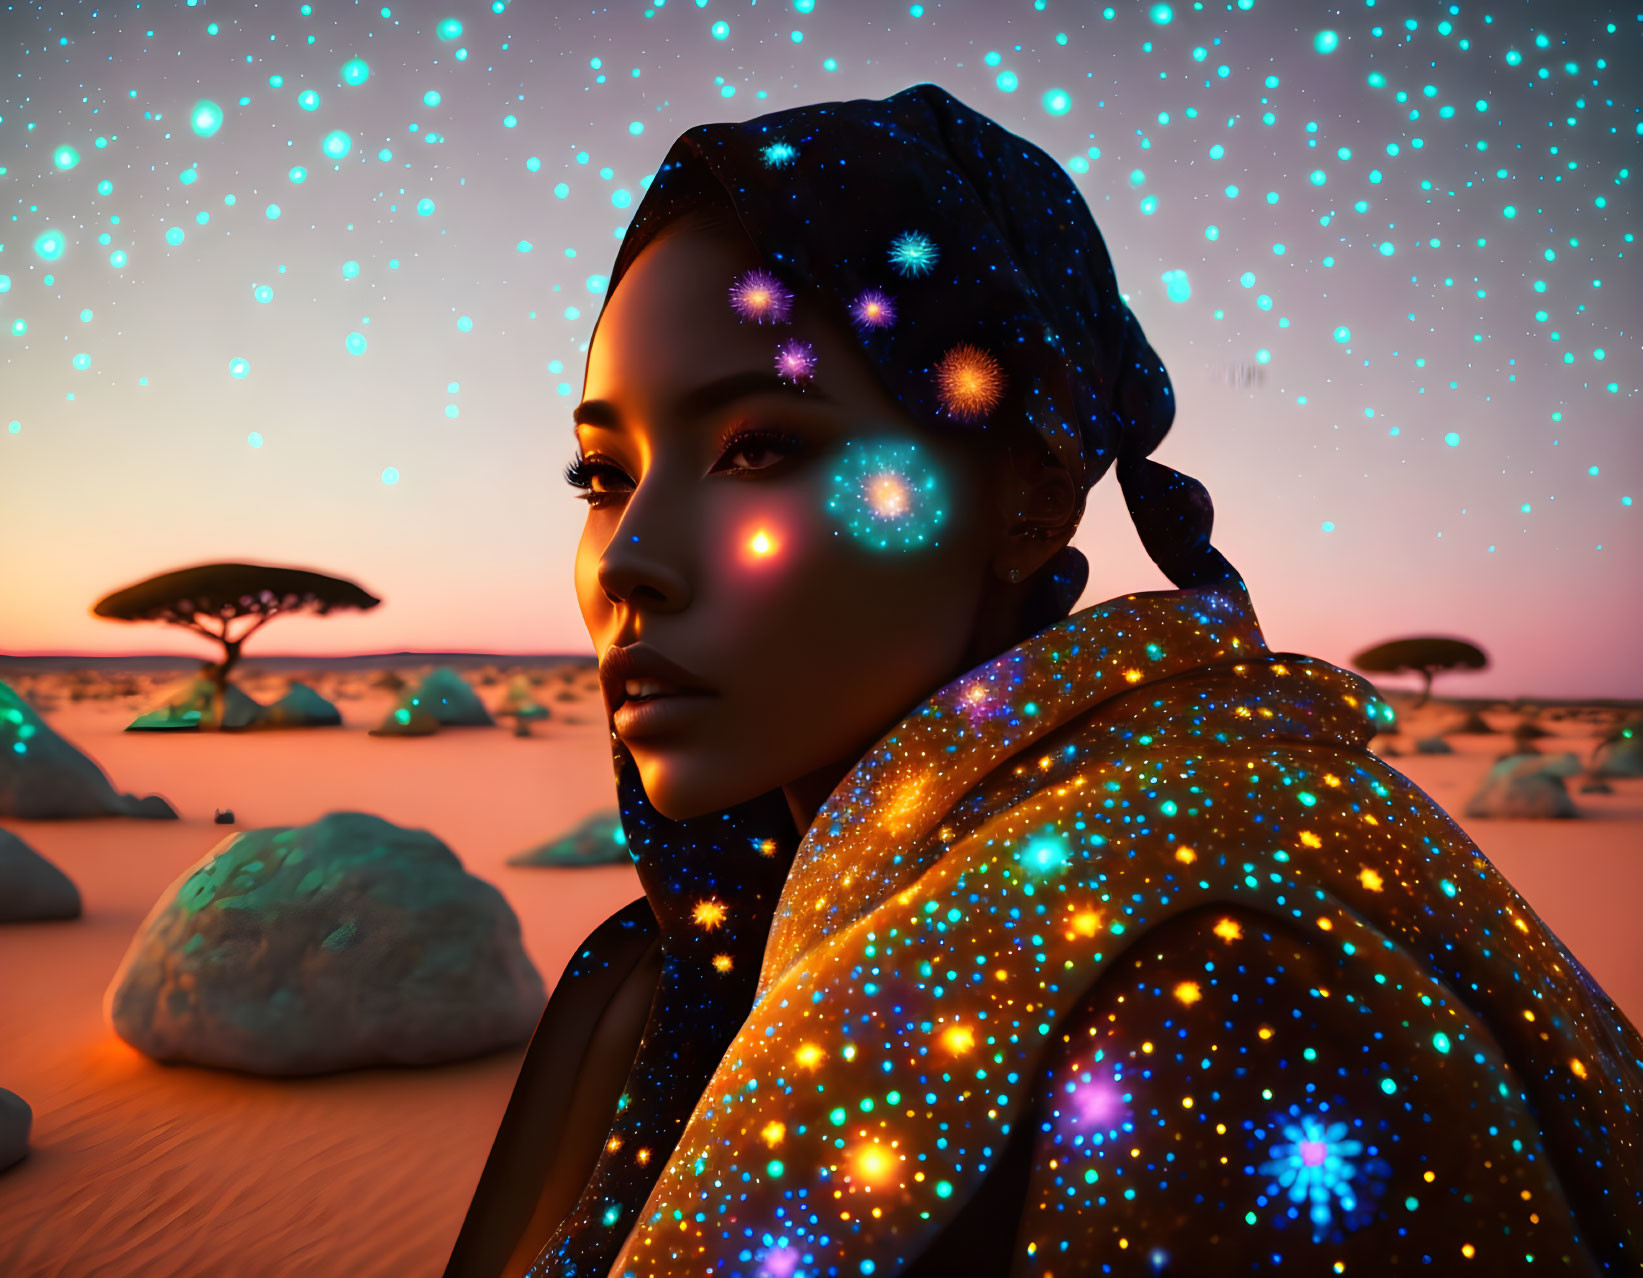 Digital art portrait of woman with glowing star-like projections, shimmery cloak, desert twilight backdrop.